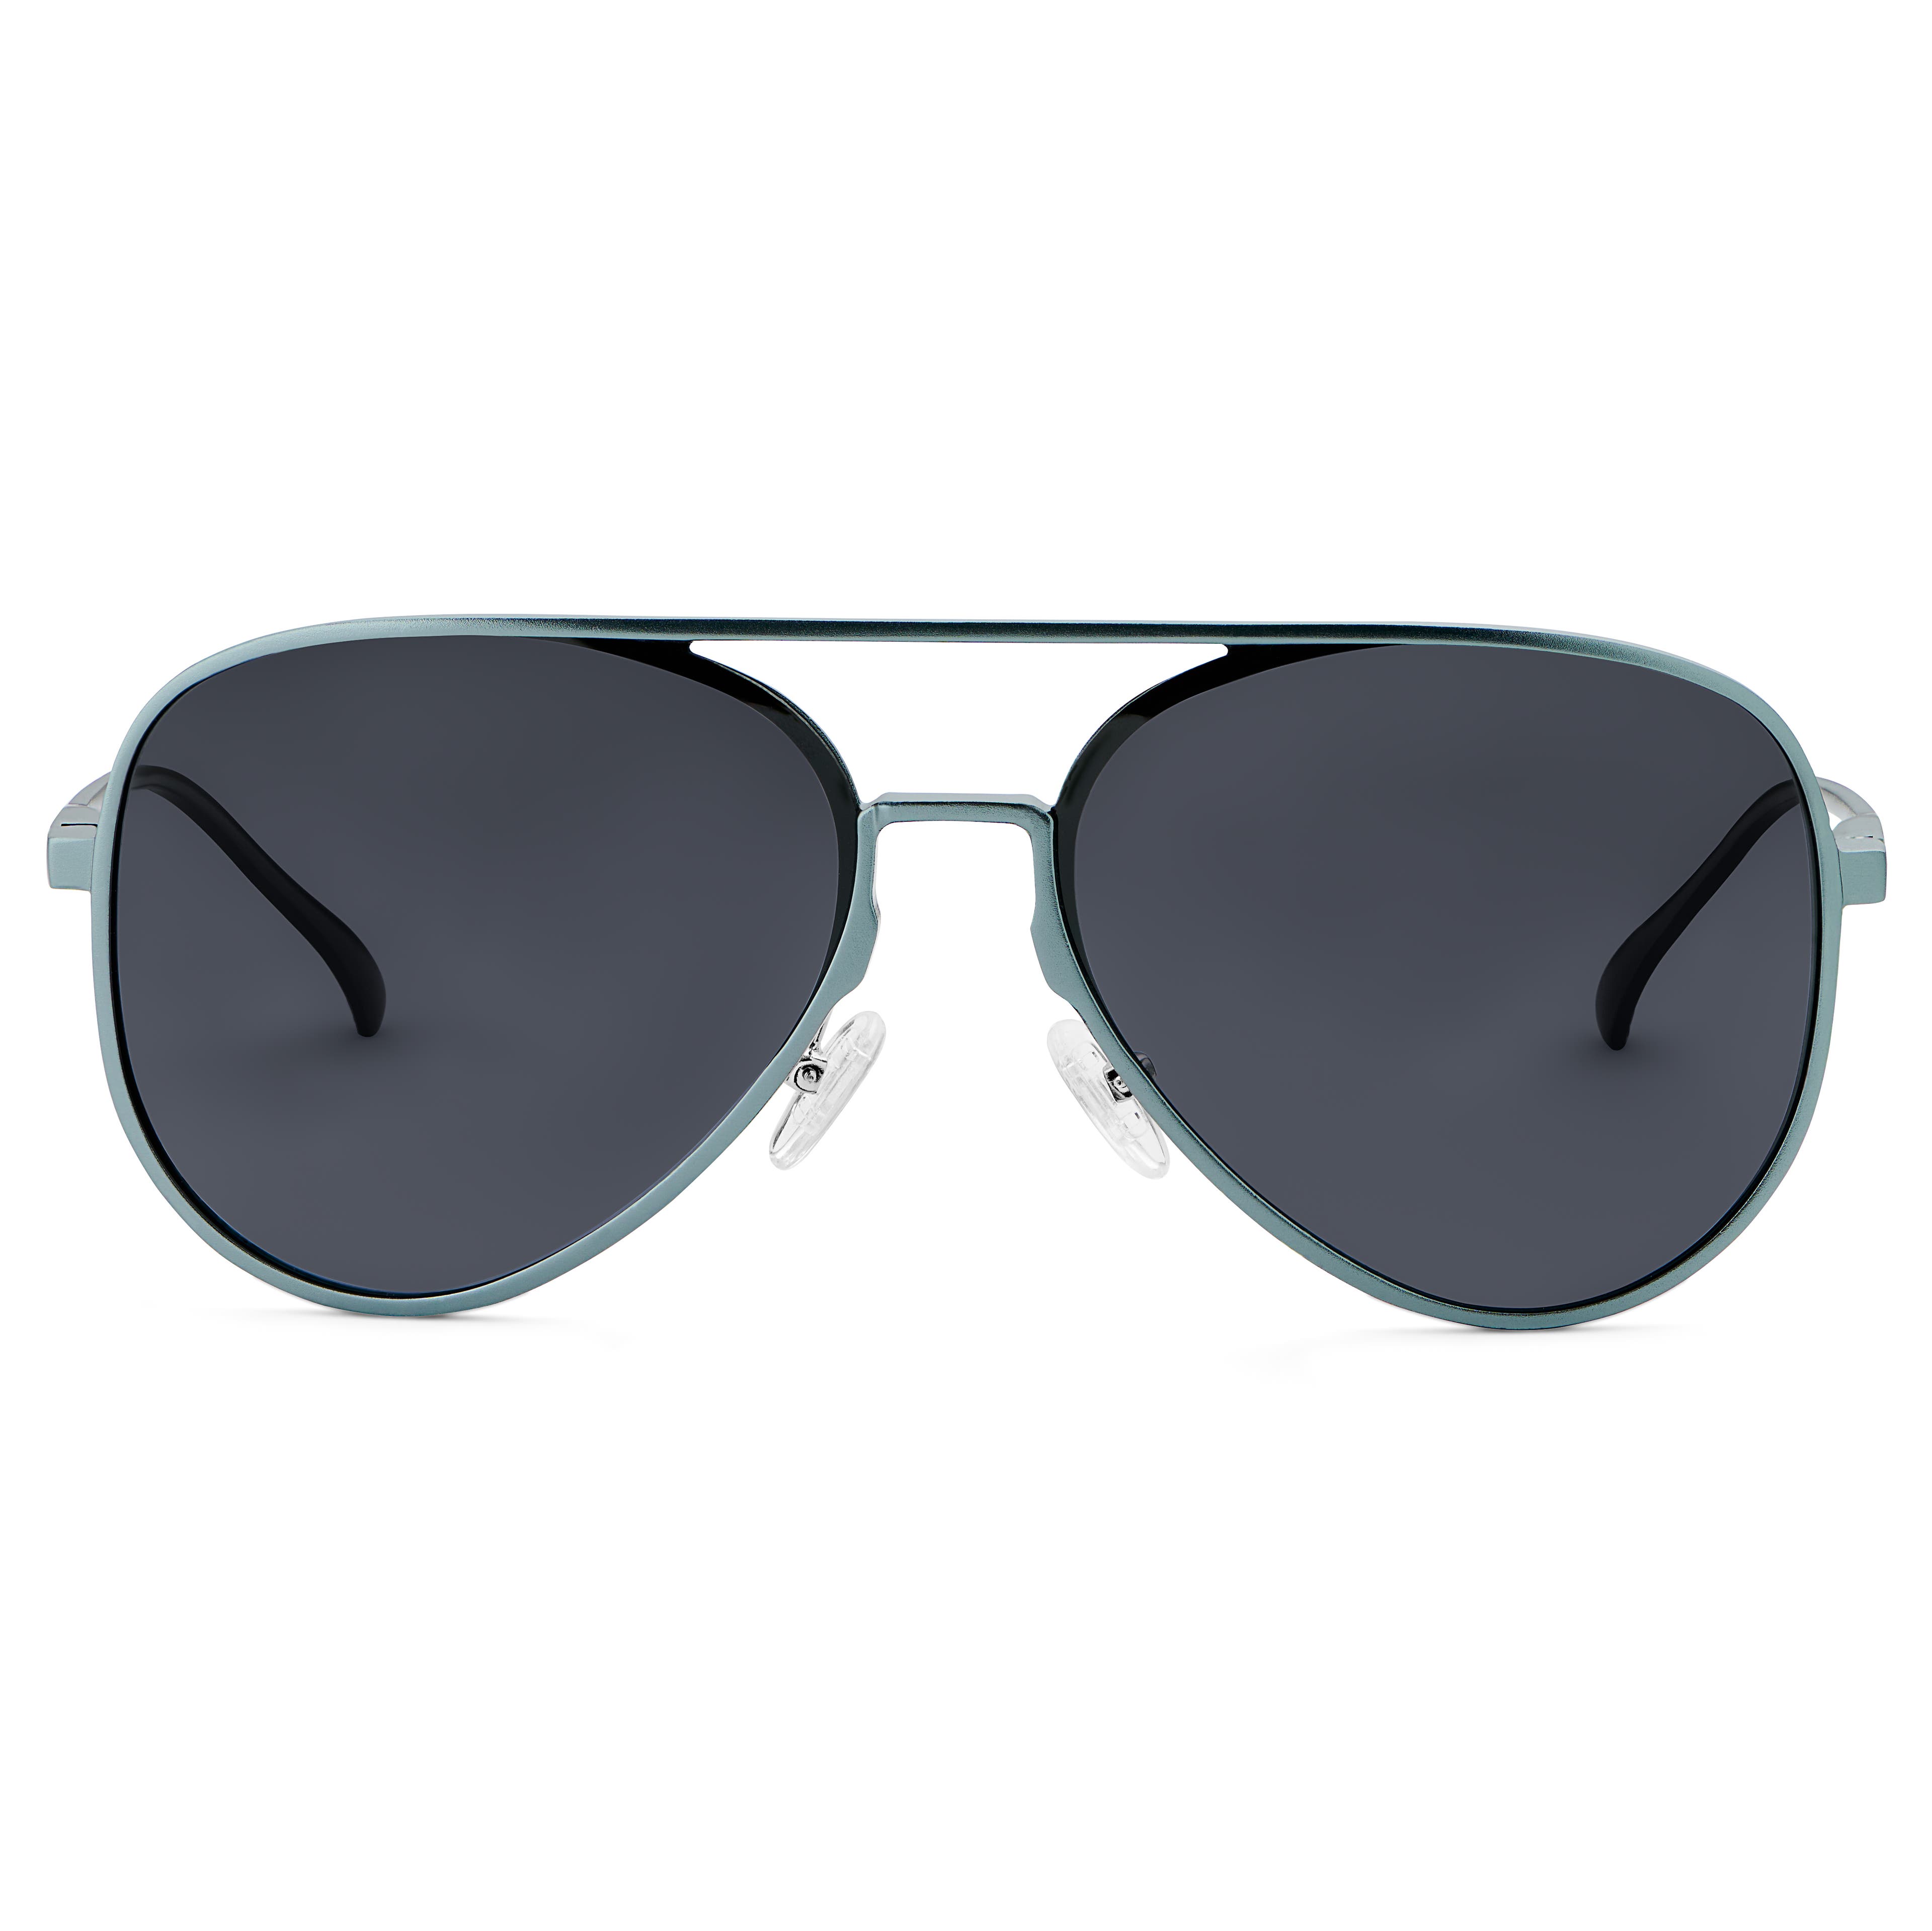 Ochelari de soare gri metalic stil aviator cu lentile polarizate